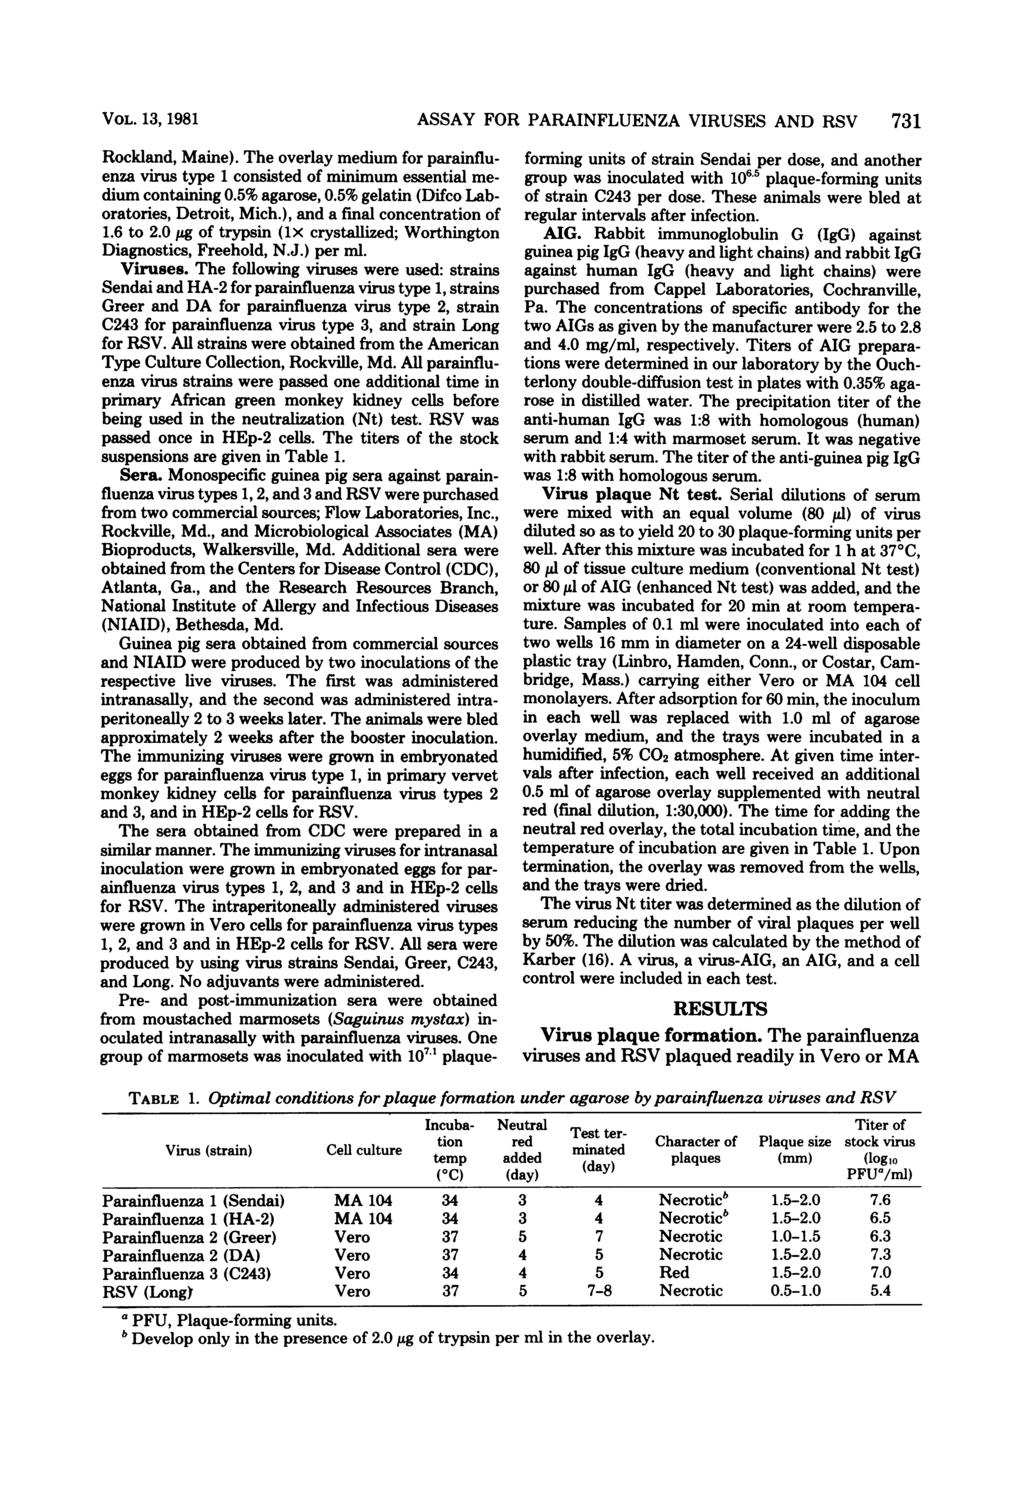 VOL. 13, 1981 Rockland, Maine). The overlay medium for parainfluenza virus type 1 consisted of minimum essential medium containing 0.5% agarose, 0.5% gelatin (Difco Laboratories, Detroit, Mich.